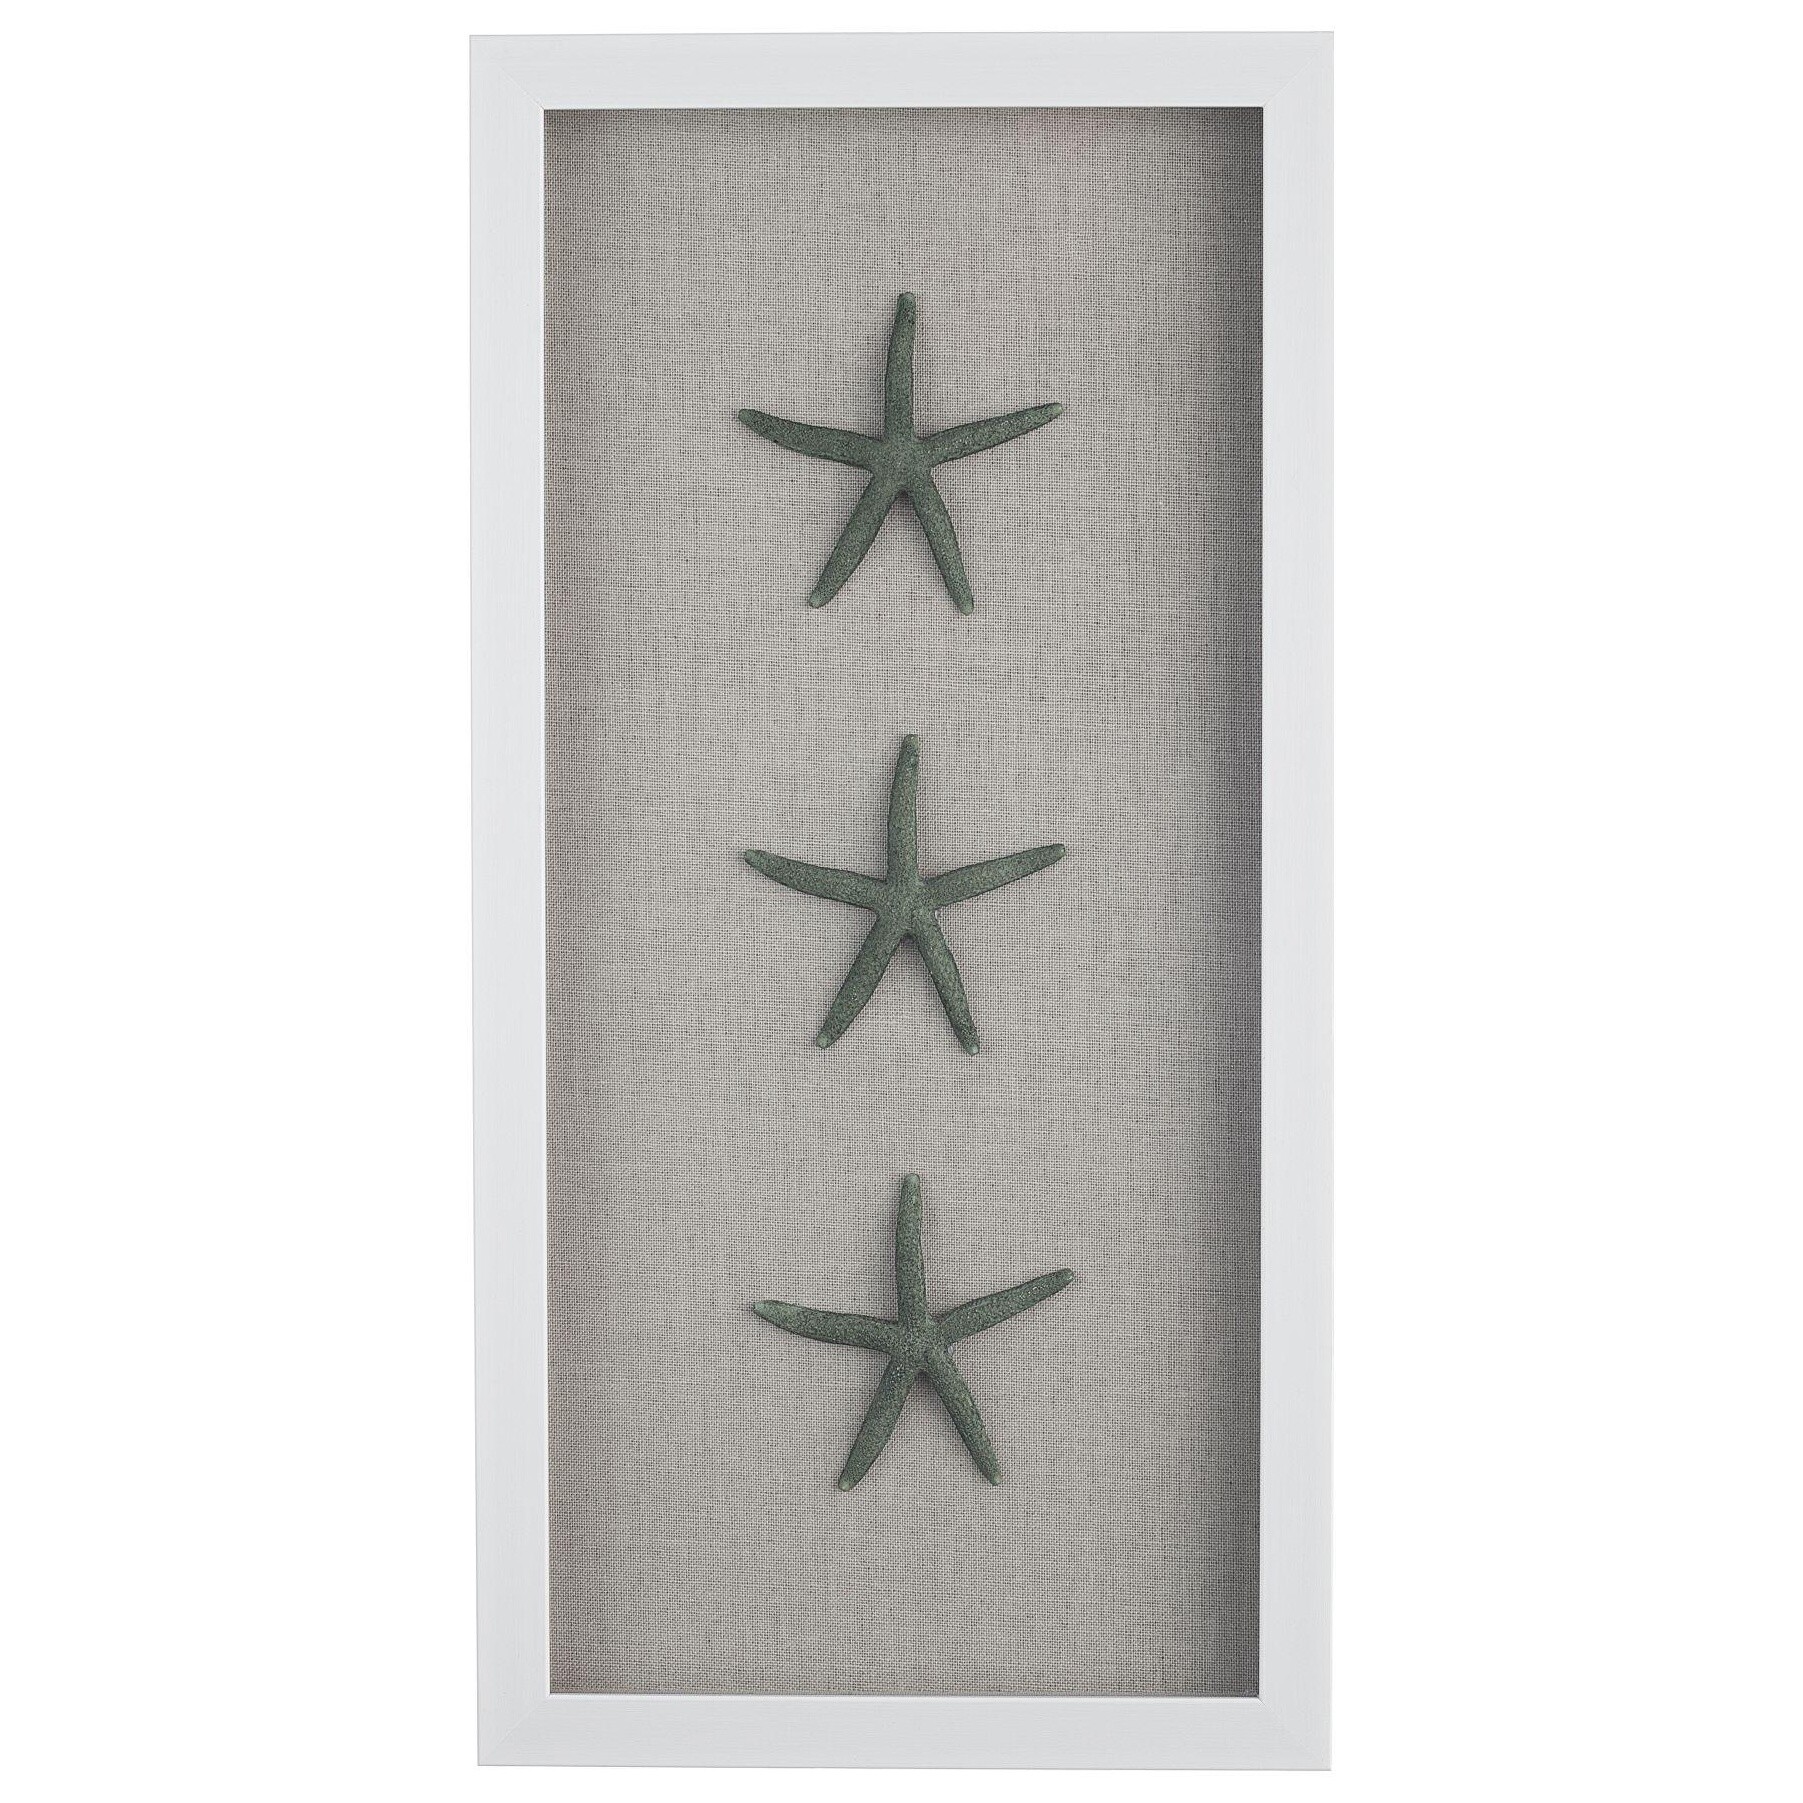 Картина шэдоубокс с искусственными морскими звездами 25х50 см белая, зеленая 83035